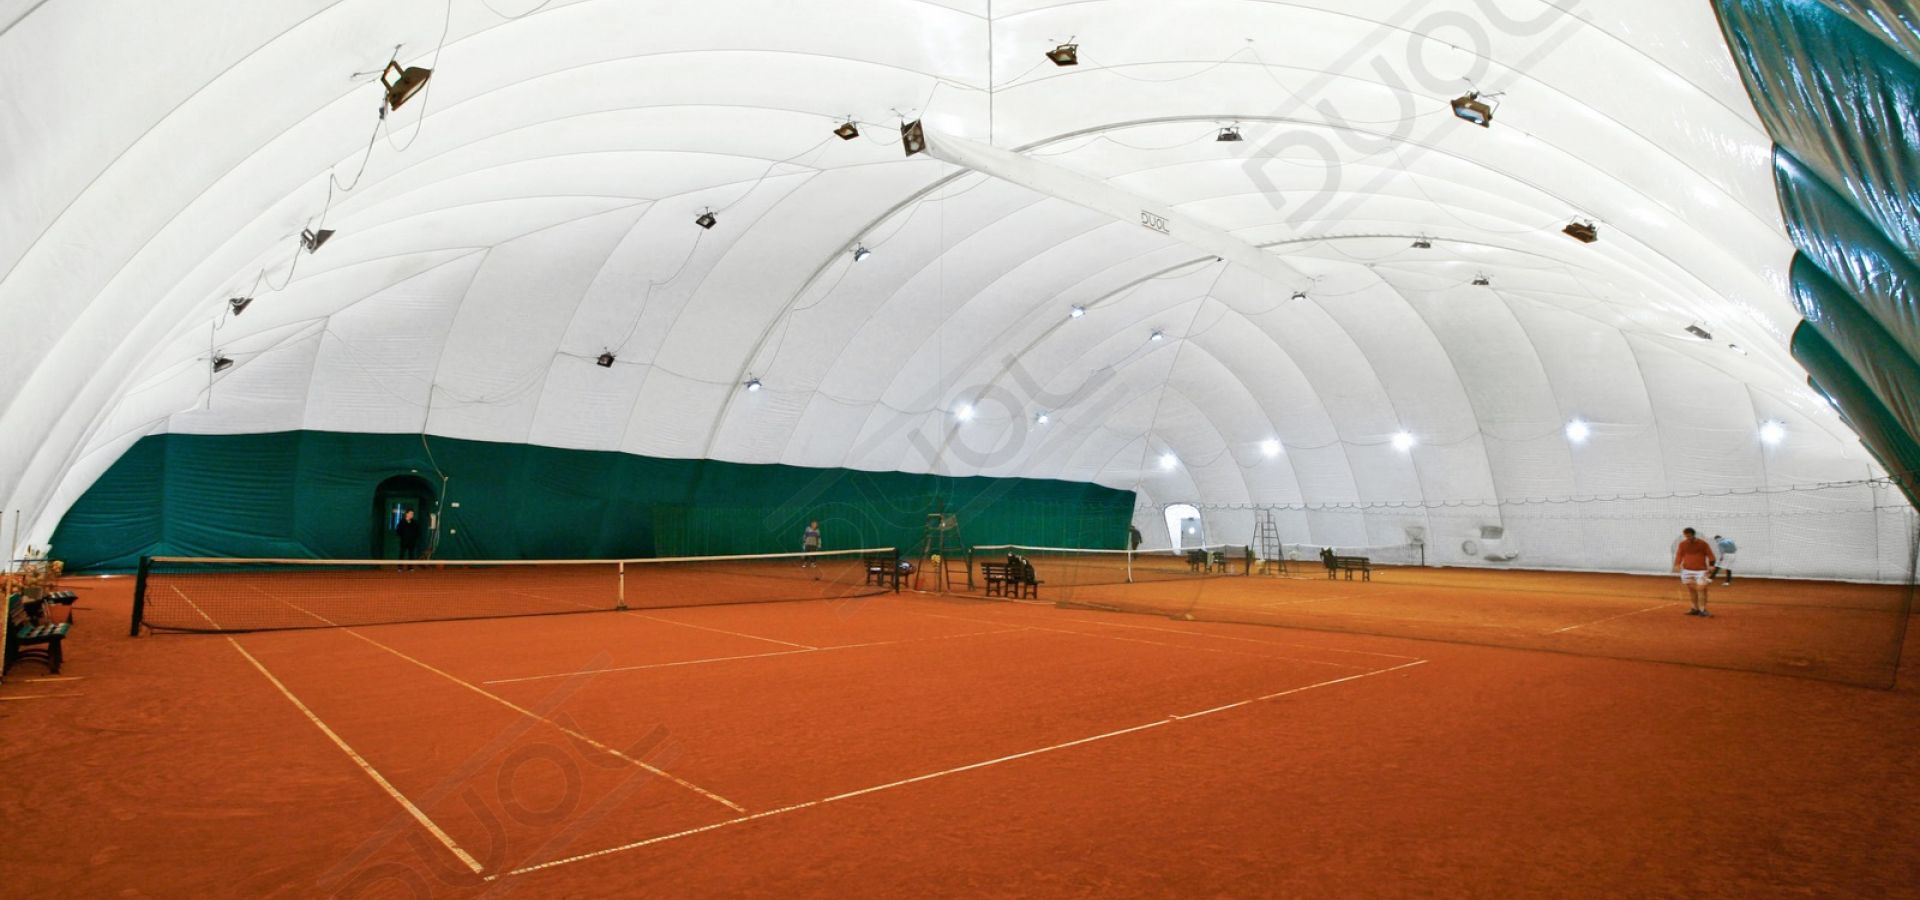 Теннисный корт под. Воздухоопорные сооружения duol. Воздухоопорный футбольный манеж. Теннисный корт воздухоопорный. Пневмоангар корт теннис.